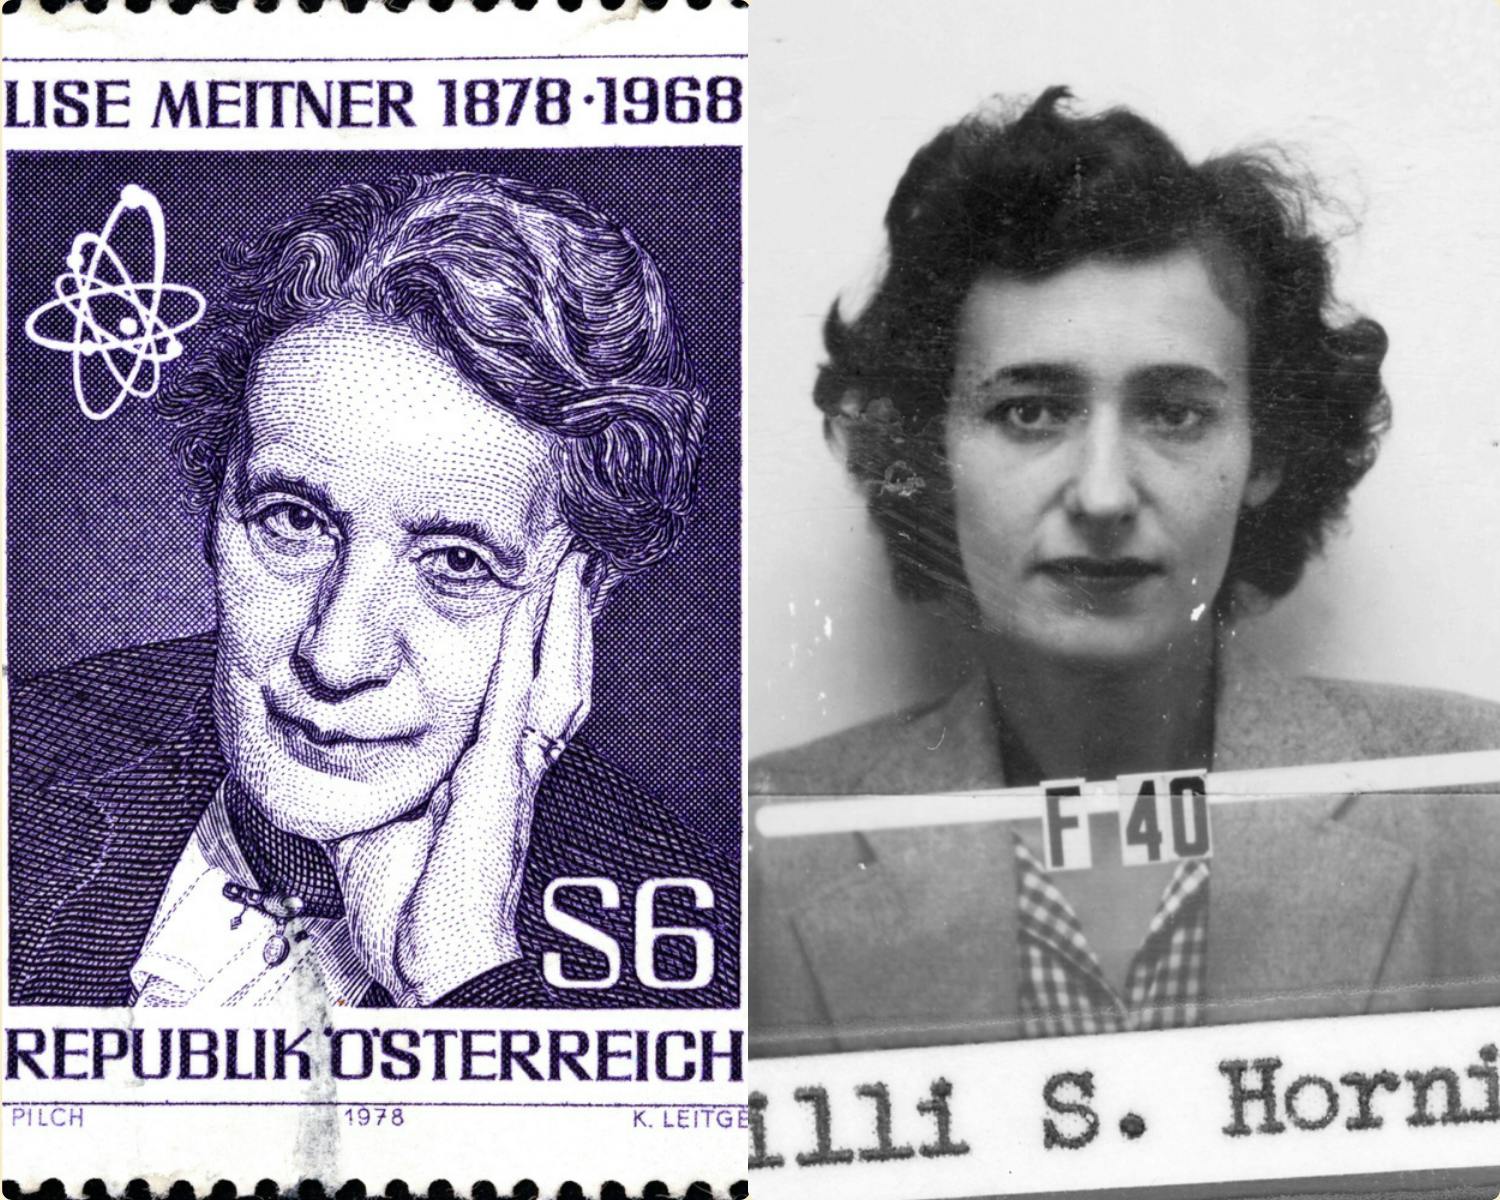 تصویر ترکیبی از لیلی هورینگ (سمت راست) و لیز میتنر (سمت چپ)